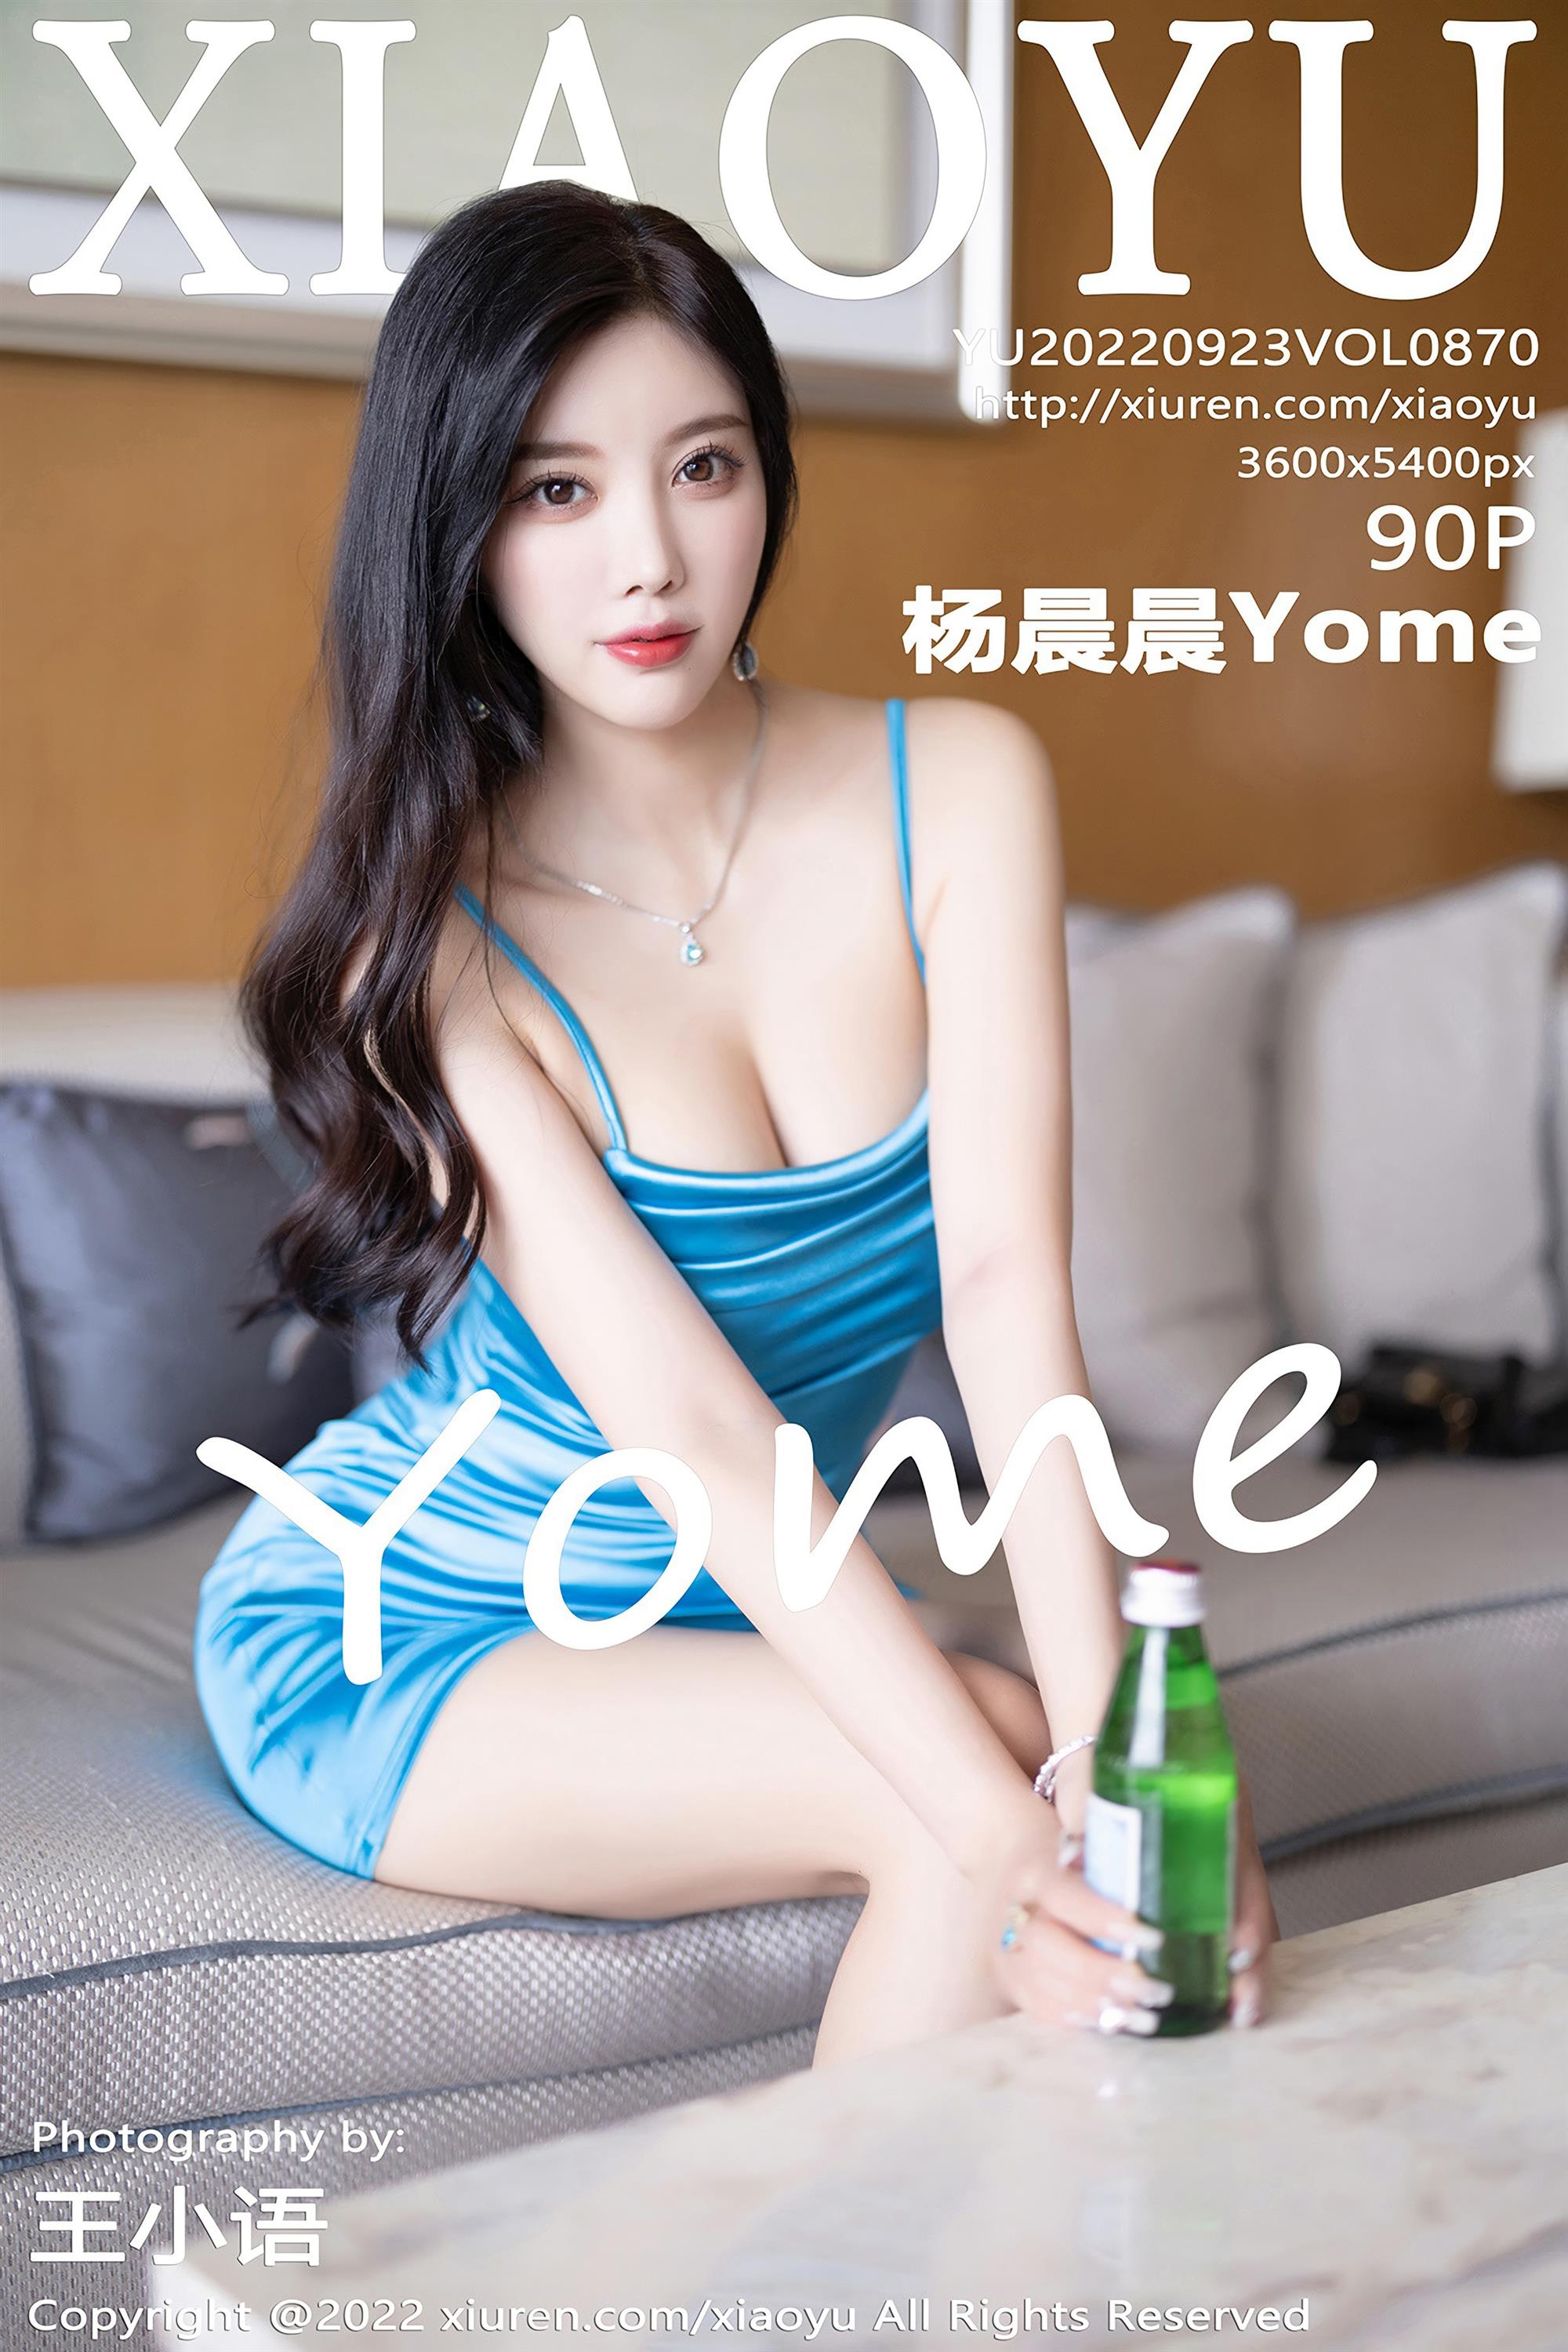 XIAOYU 语画界 2022.09.23 Vol.870 杨晨晨Yome - 91.jpg